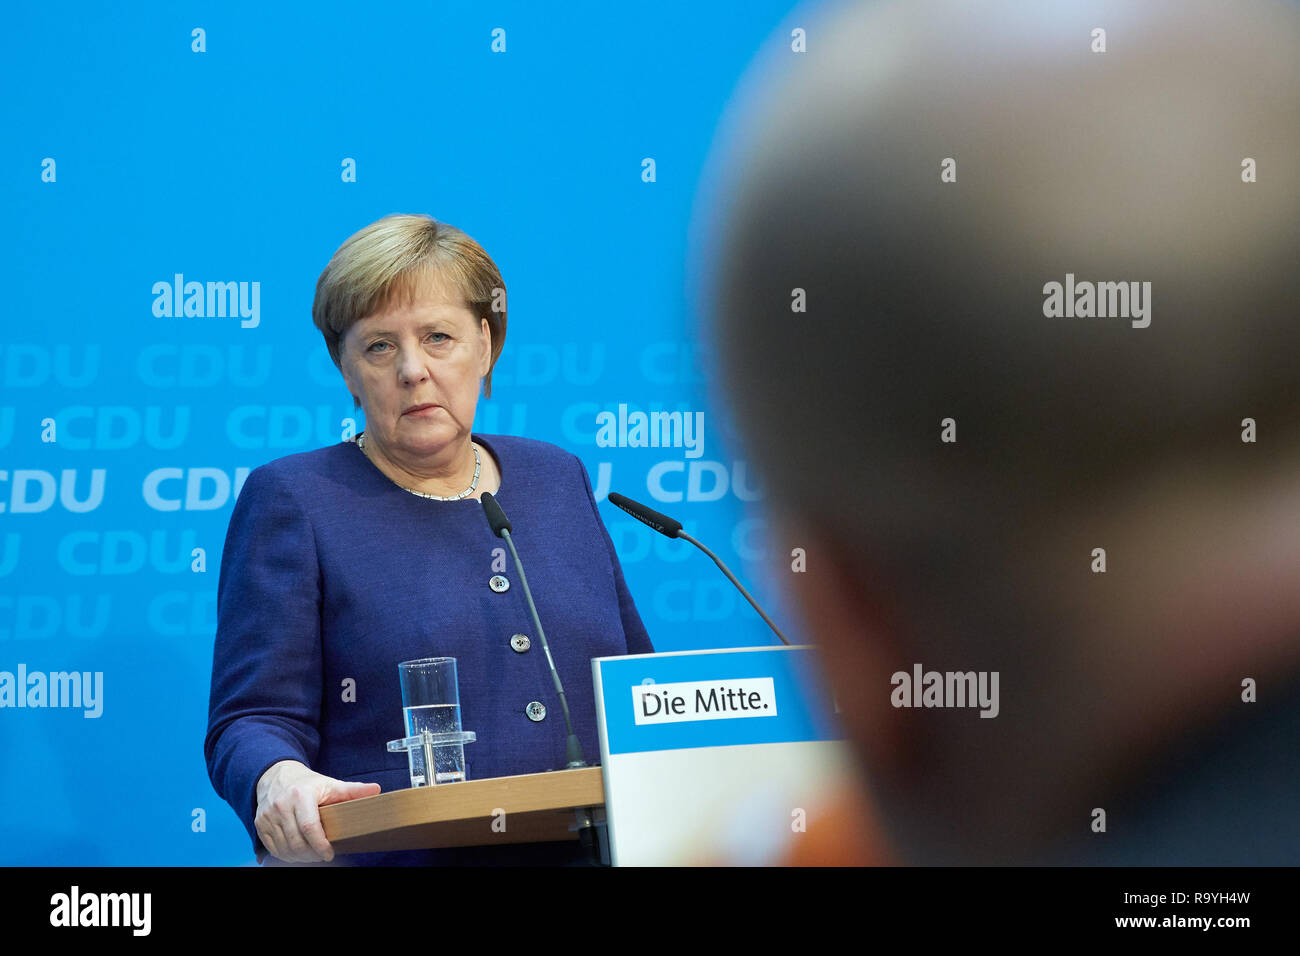 05.11.2018, Berlin, Deutschland - Angela Merkel - Vorsitzende der CDU Deutschlands bei einer Pressekonferenz. 00R181105D149CARO.JPG [MODEL RELEASE: NO Stock Photo